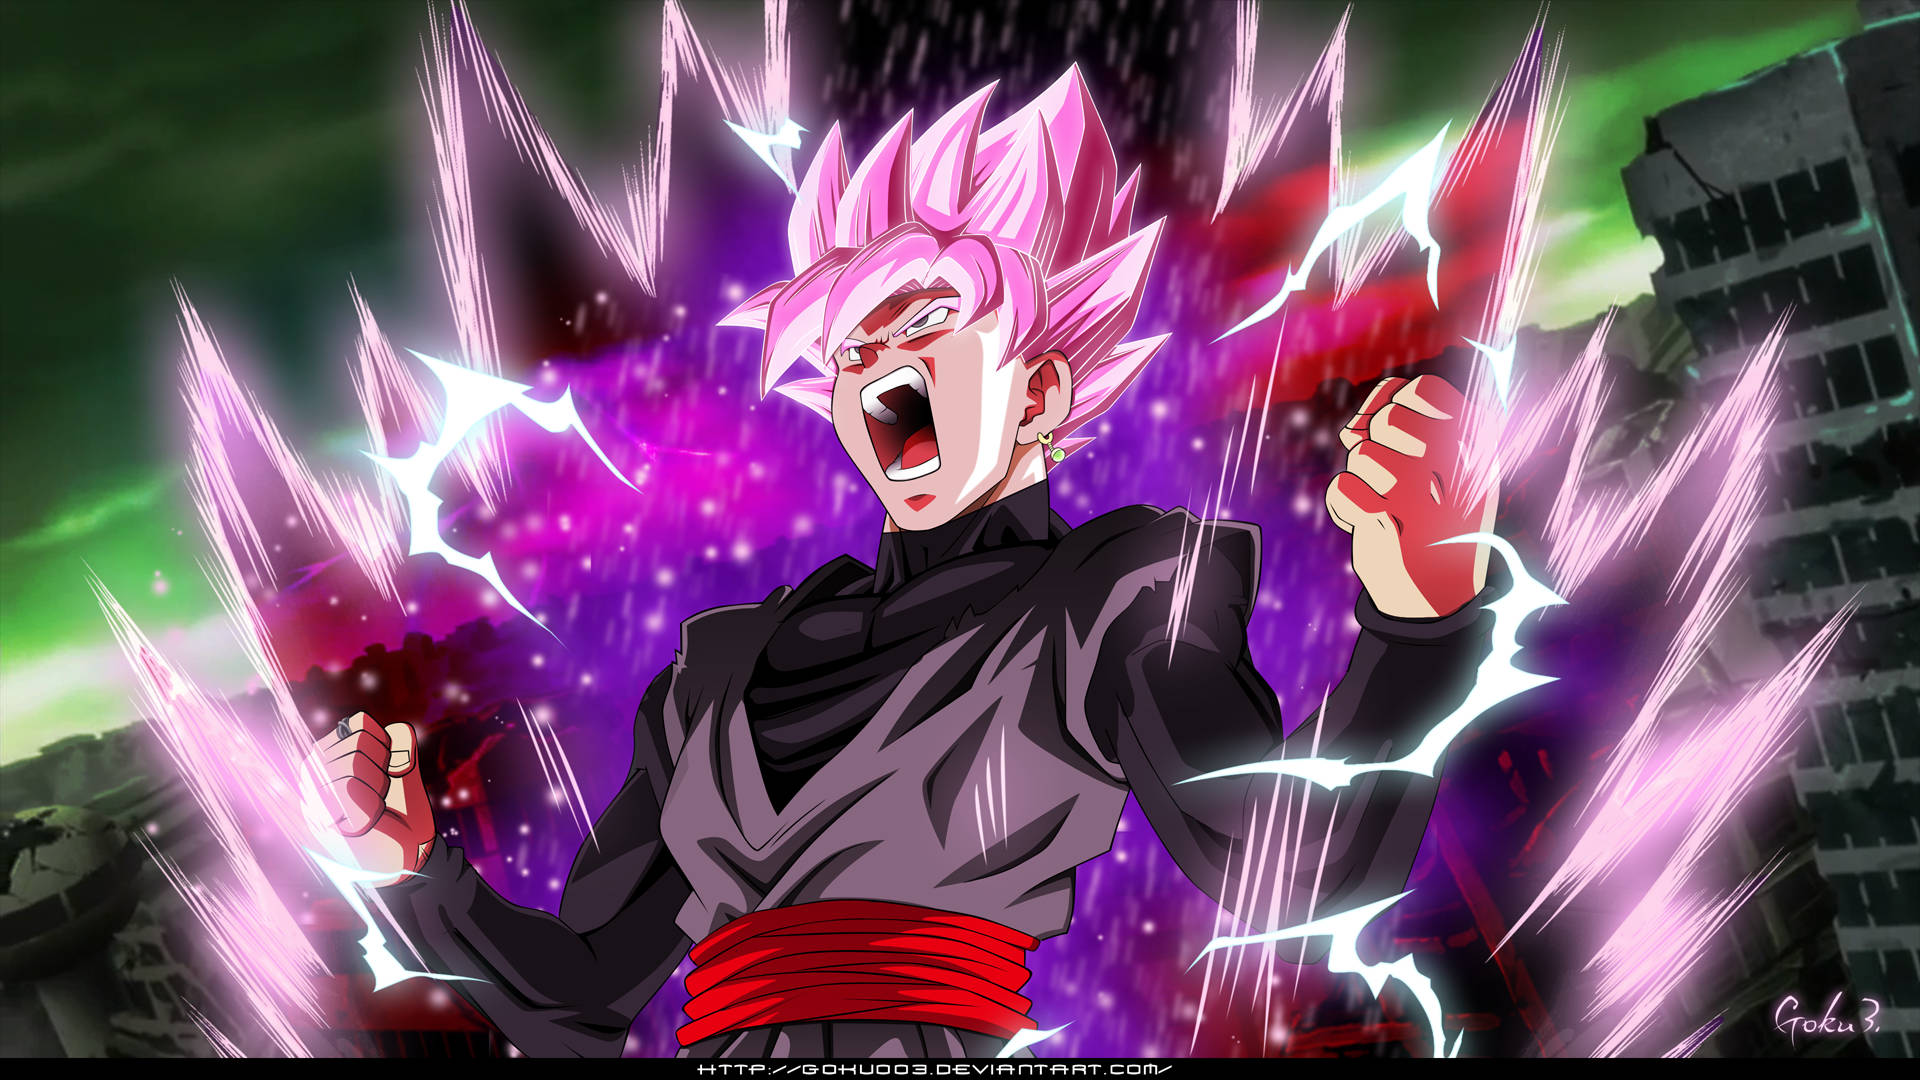 Nếu bạn là một fan hâm mộ của Goku Black, hãy nhấn vào ảnh nền này để có được hình nền phong cách đầy đủ sức mạnh và đen tối của nhân vật này.